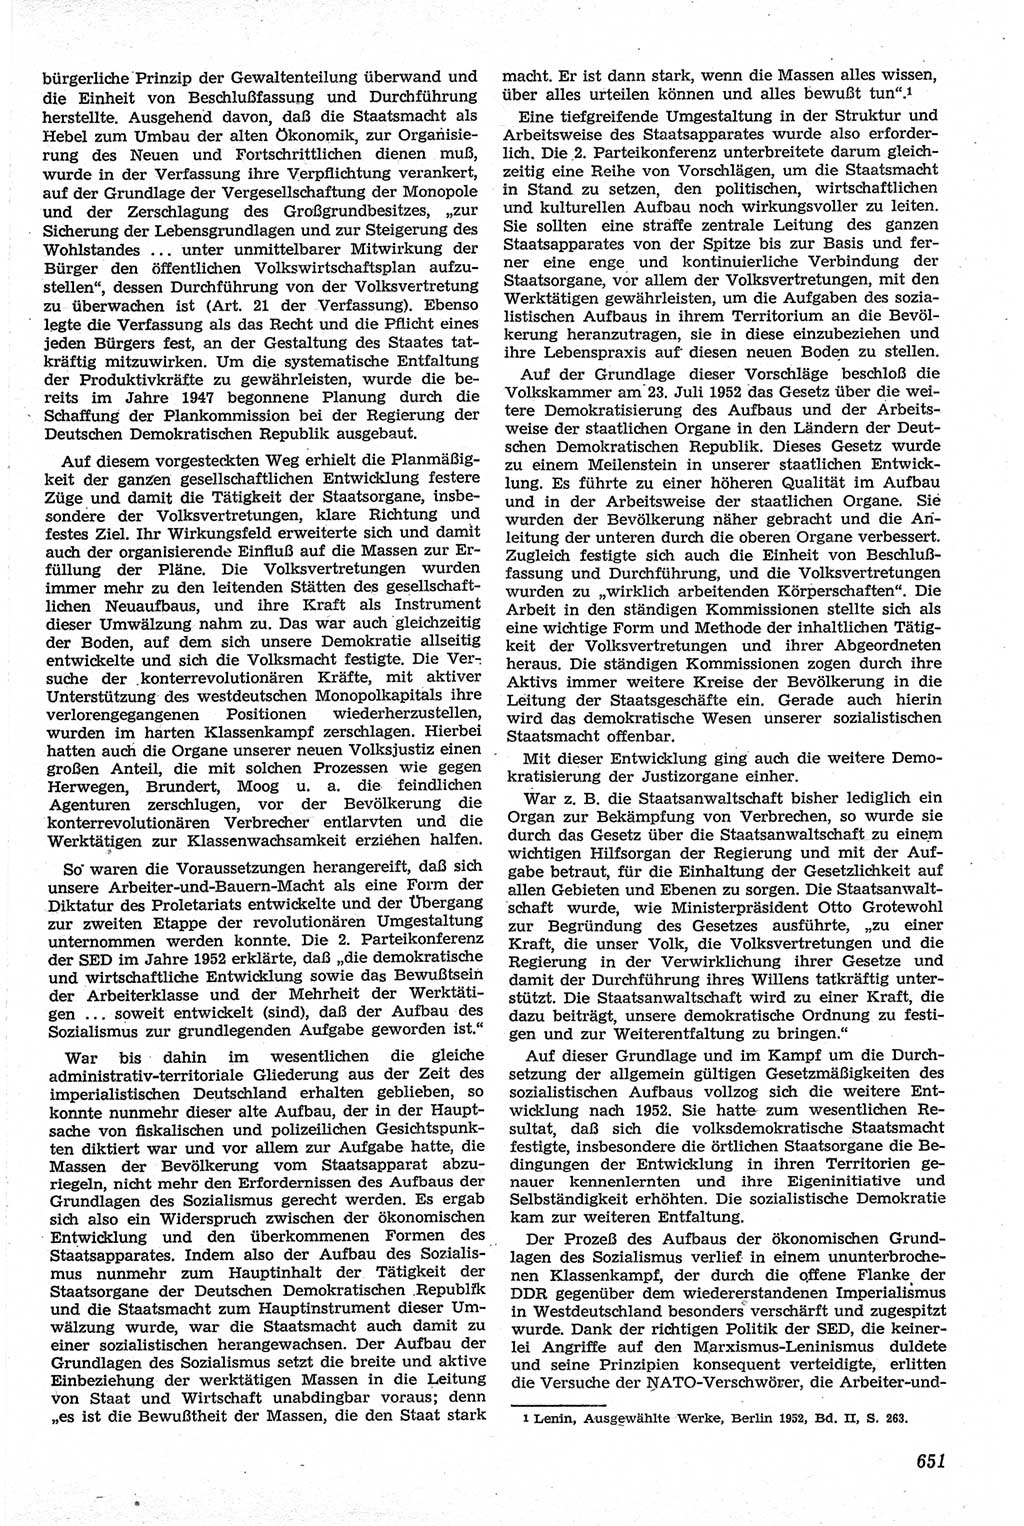 Neue Justiz (NJ), Zeitschrift für Recht und Rechtswissenschaft [Deutsche Demokratische Republik (DDR)], 13. Jahrgang 1959, Seite 651 (NJ DDR 1959, S. 651)